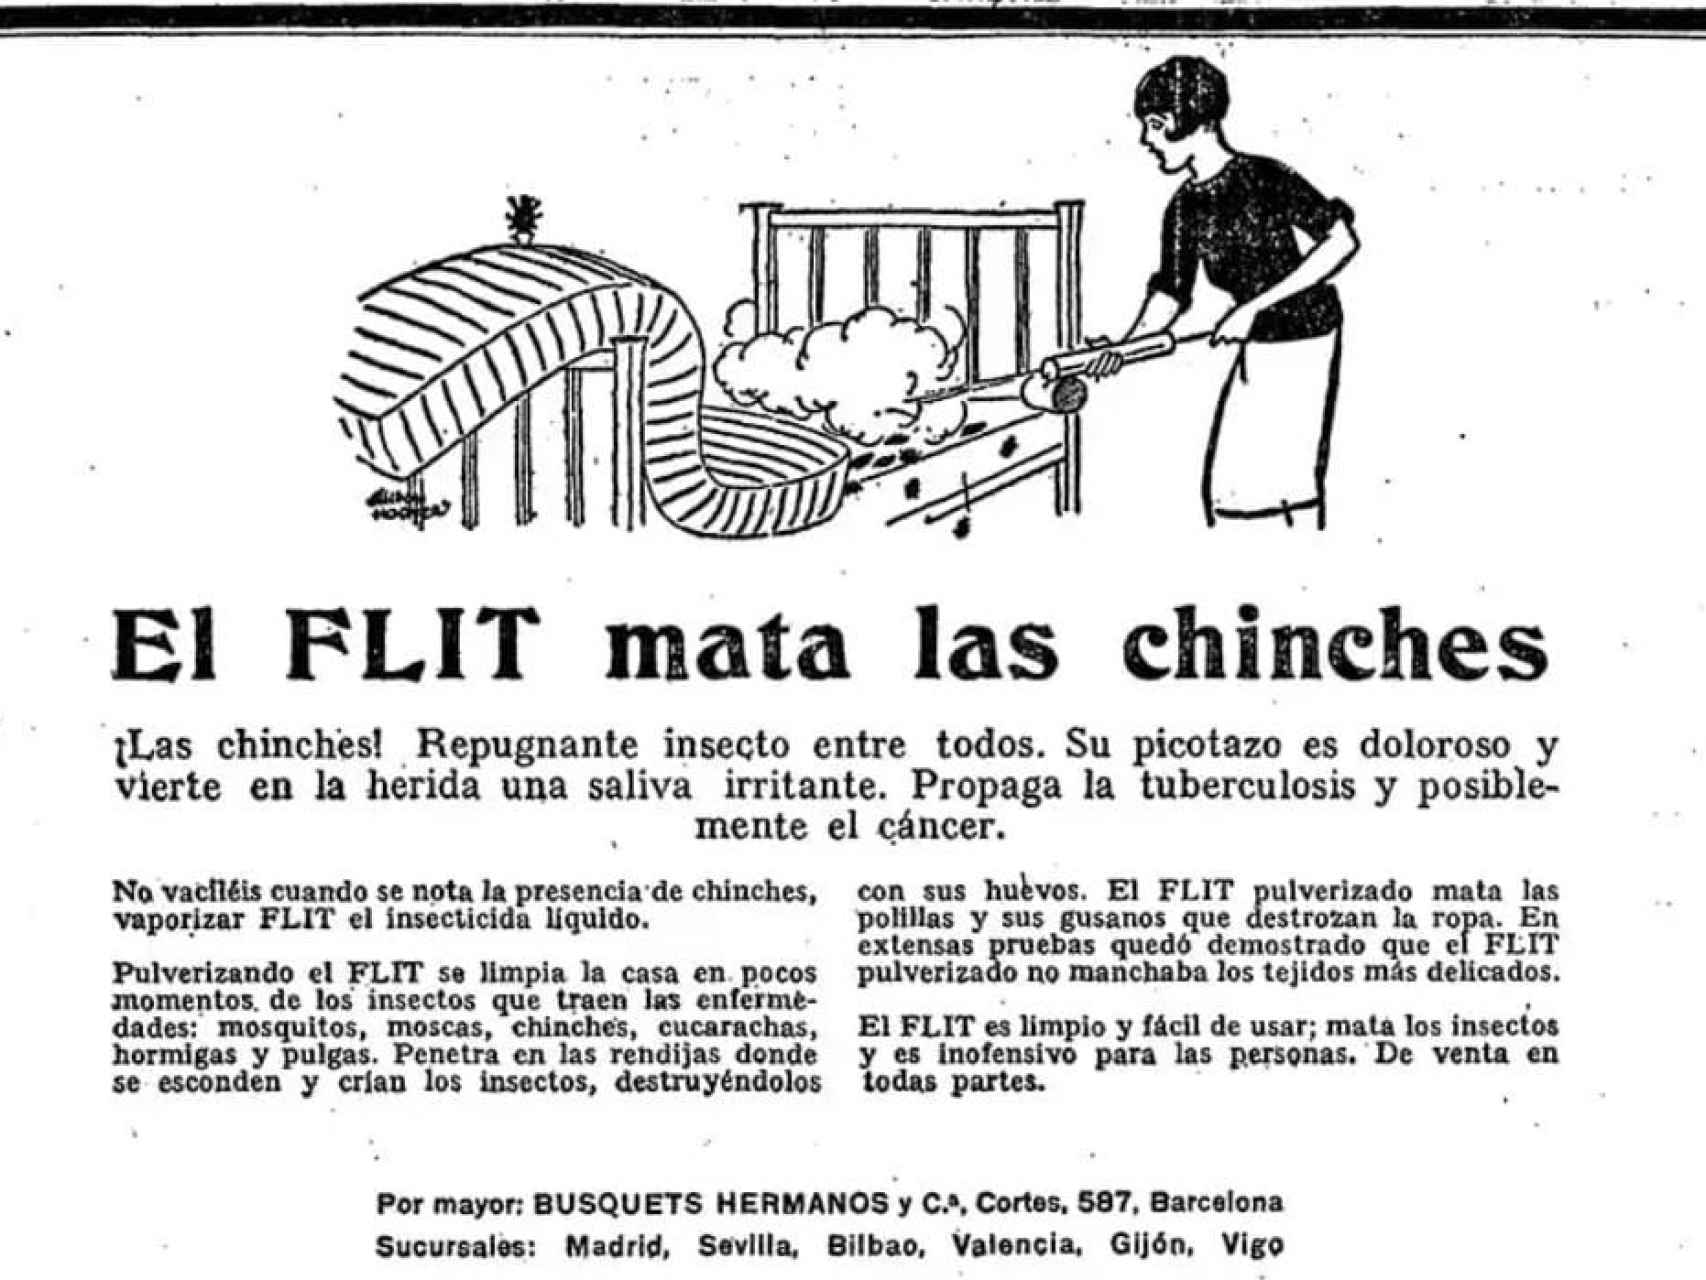 Antiguo anuncio de insecticida con DDT para matar las chinches.